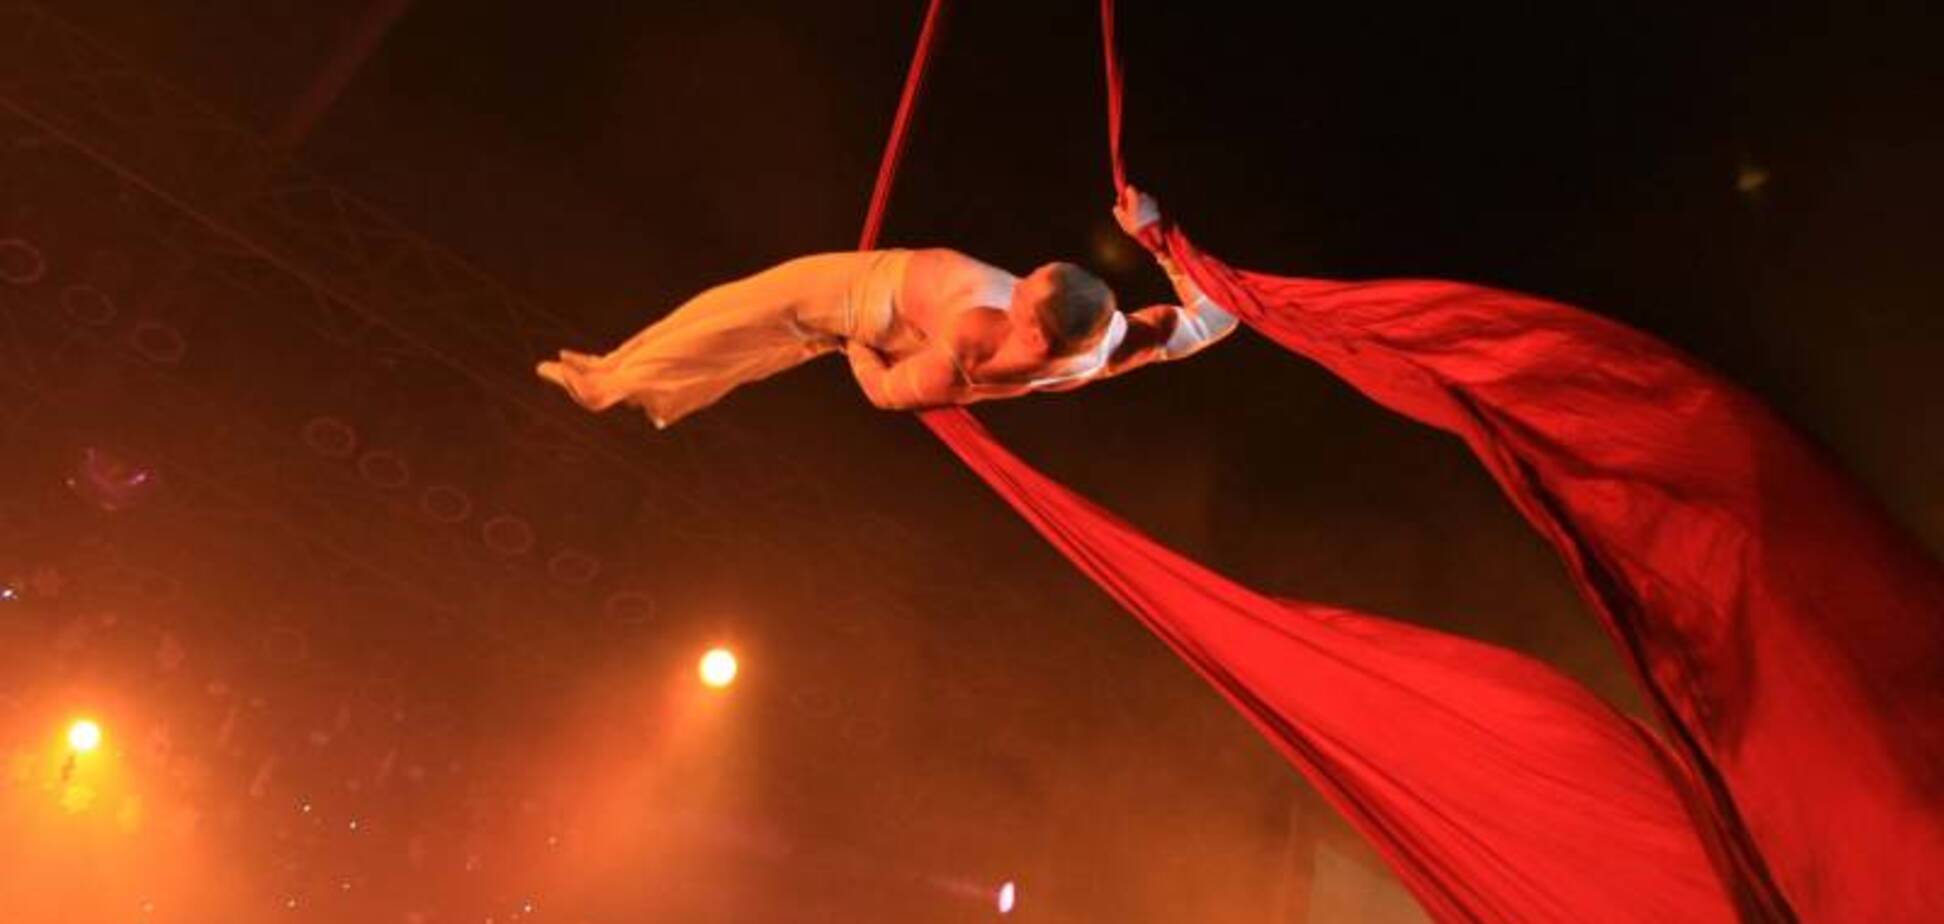 Моторошне падіння акробата з під купола цирку в Росії потрапило на відео